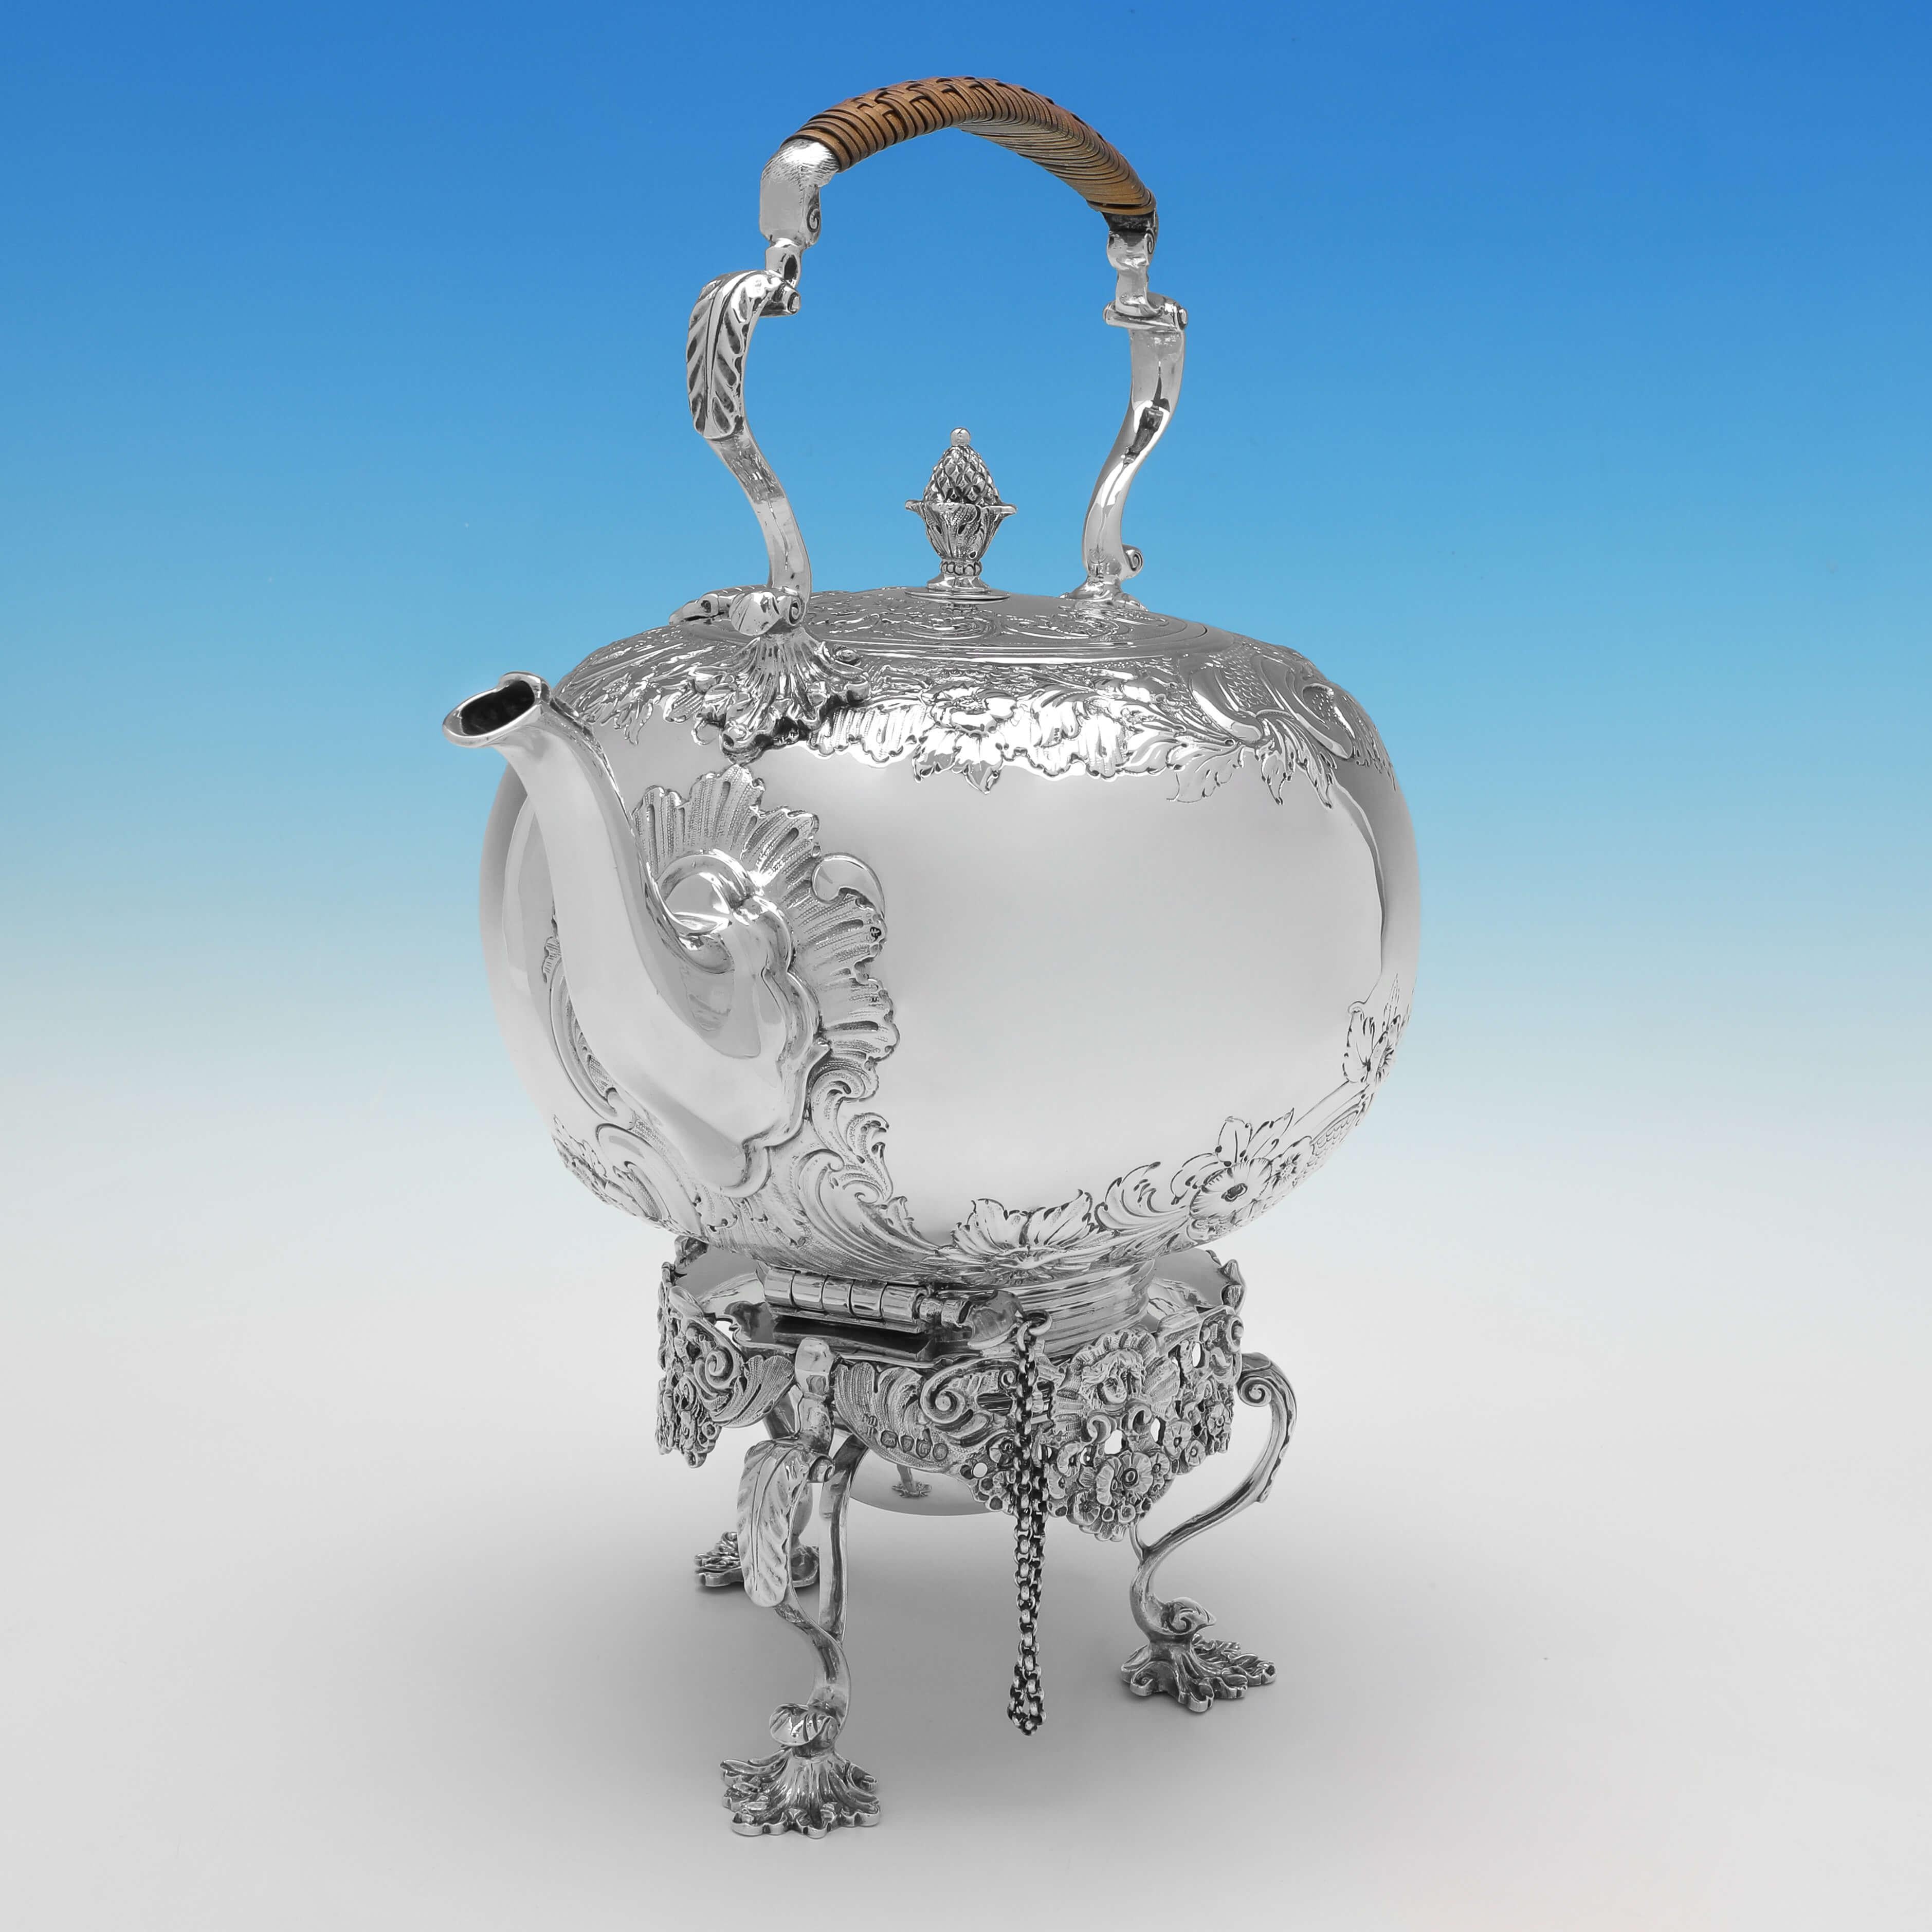 Poinçonnée à Londres en 1882 par Daniel et Charles Houle, cette attrayante bouilloire victorienne en argent sterling antique est dotée d'un support en fonte qui supporte un brûleur à alcool, d'une décoration ciselée plate sur le corps et le